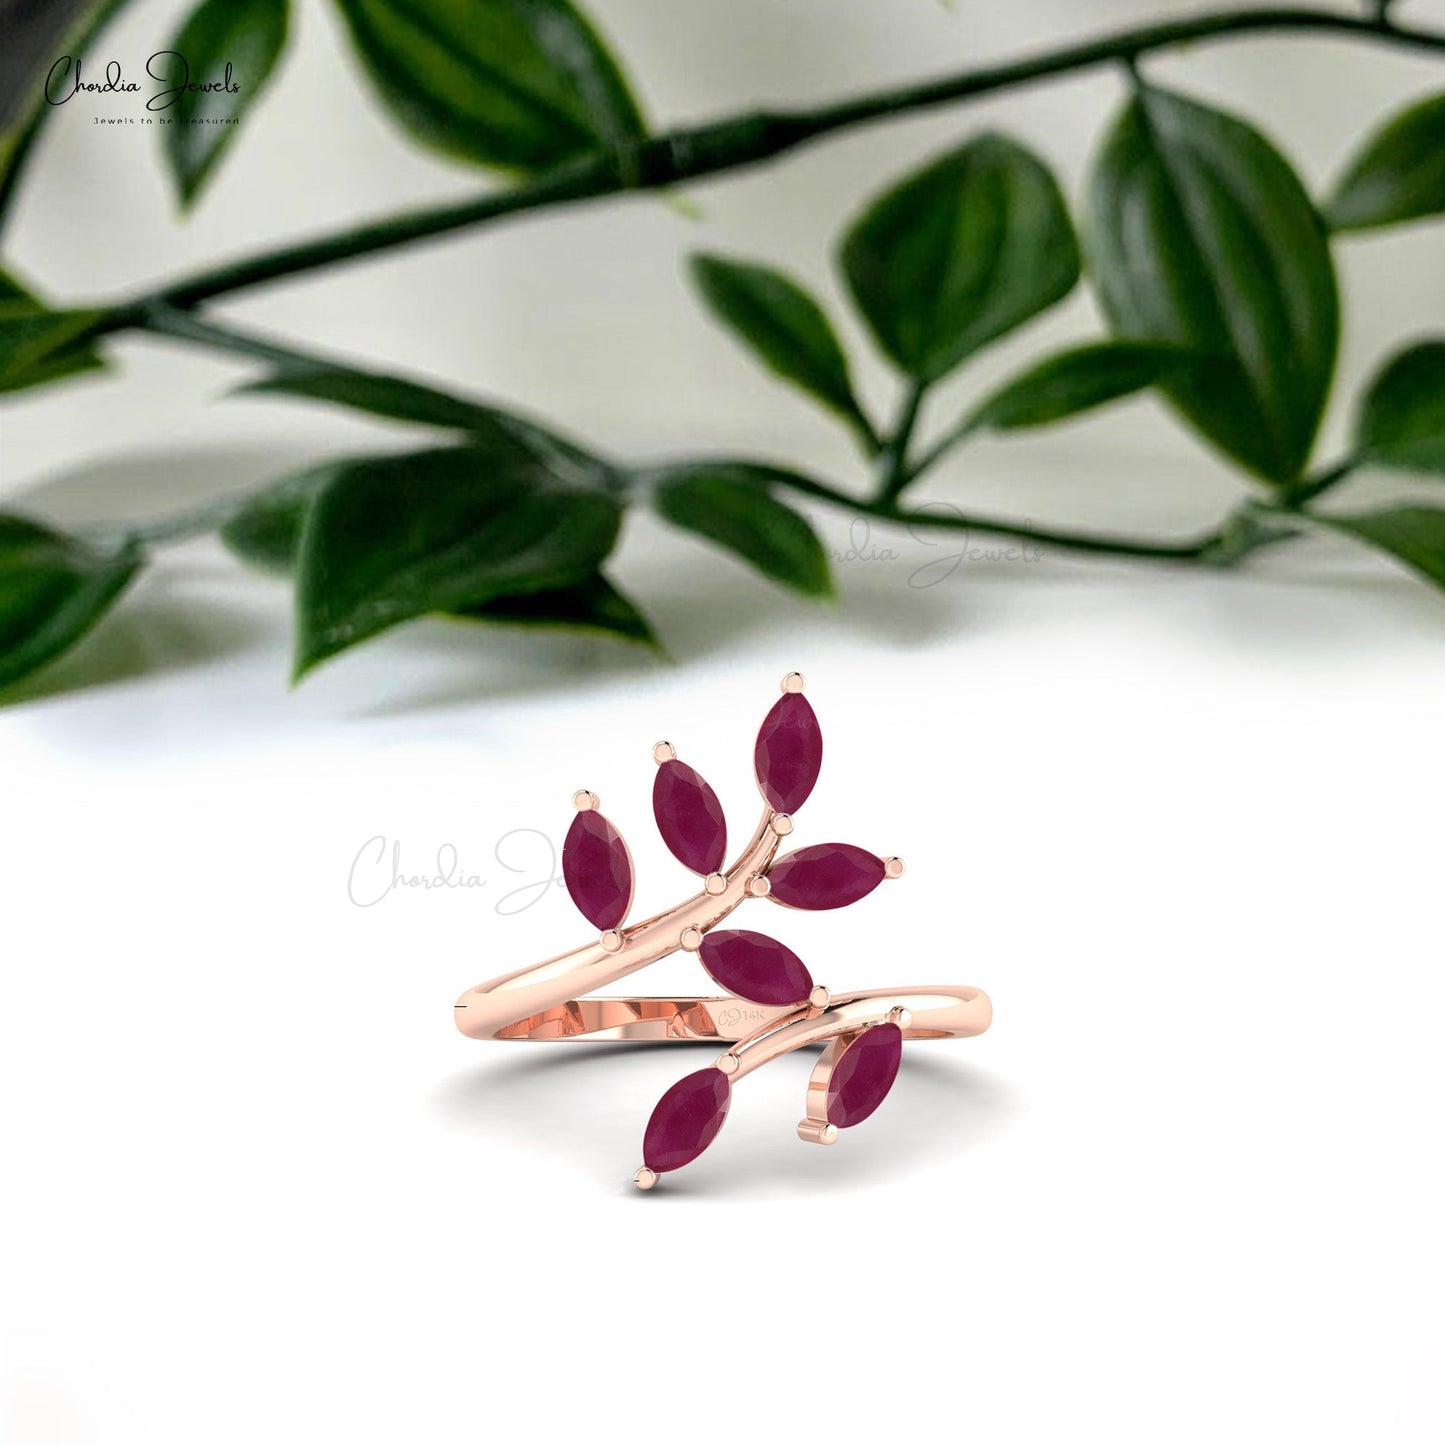 Beautiful Leaf Design Ruby Wedding Ring In 14k Gold